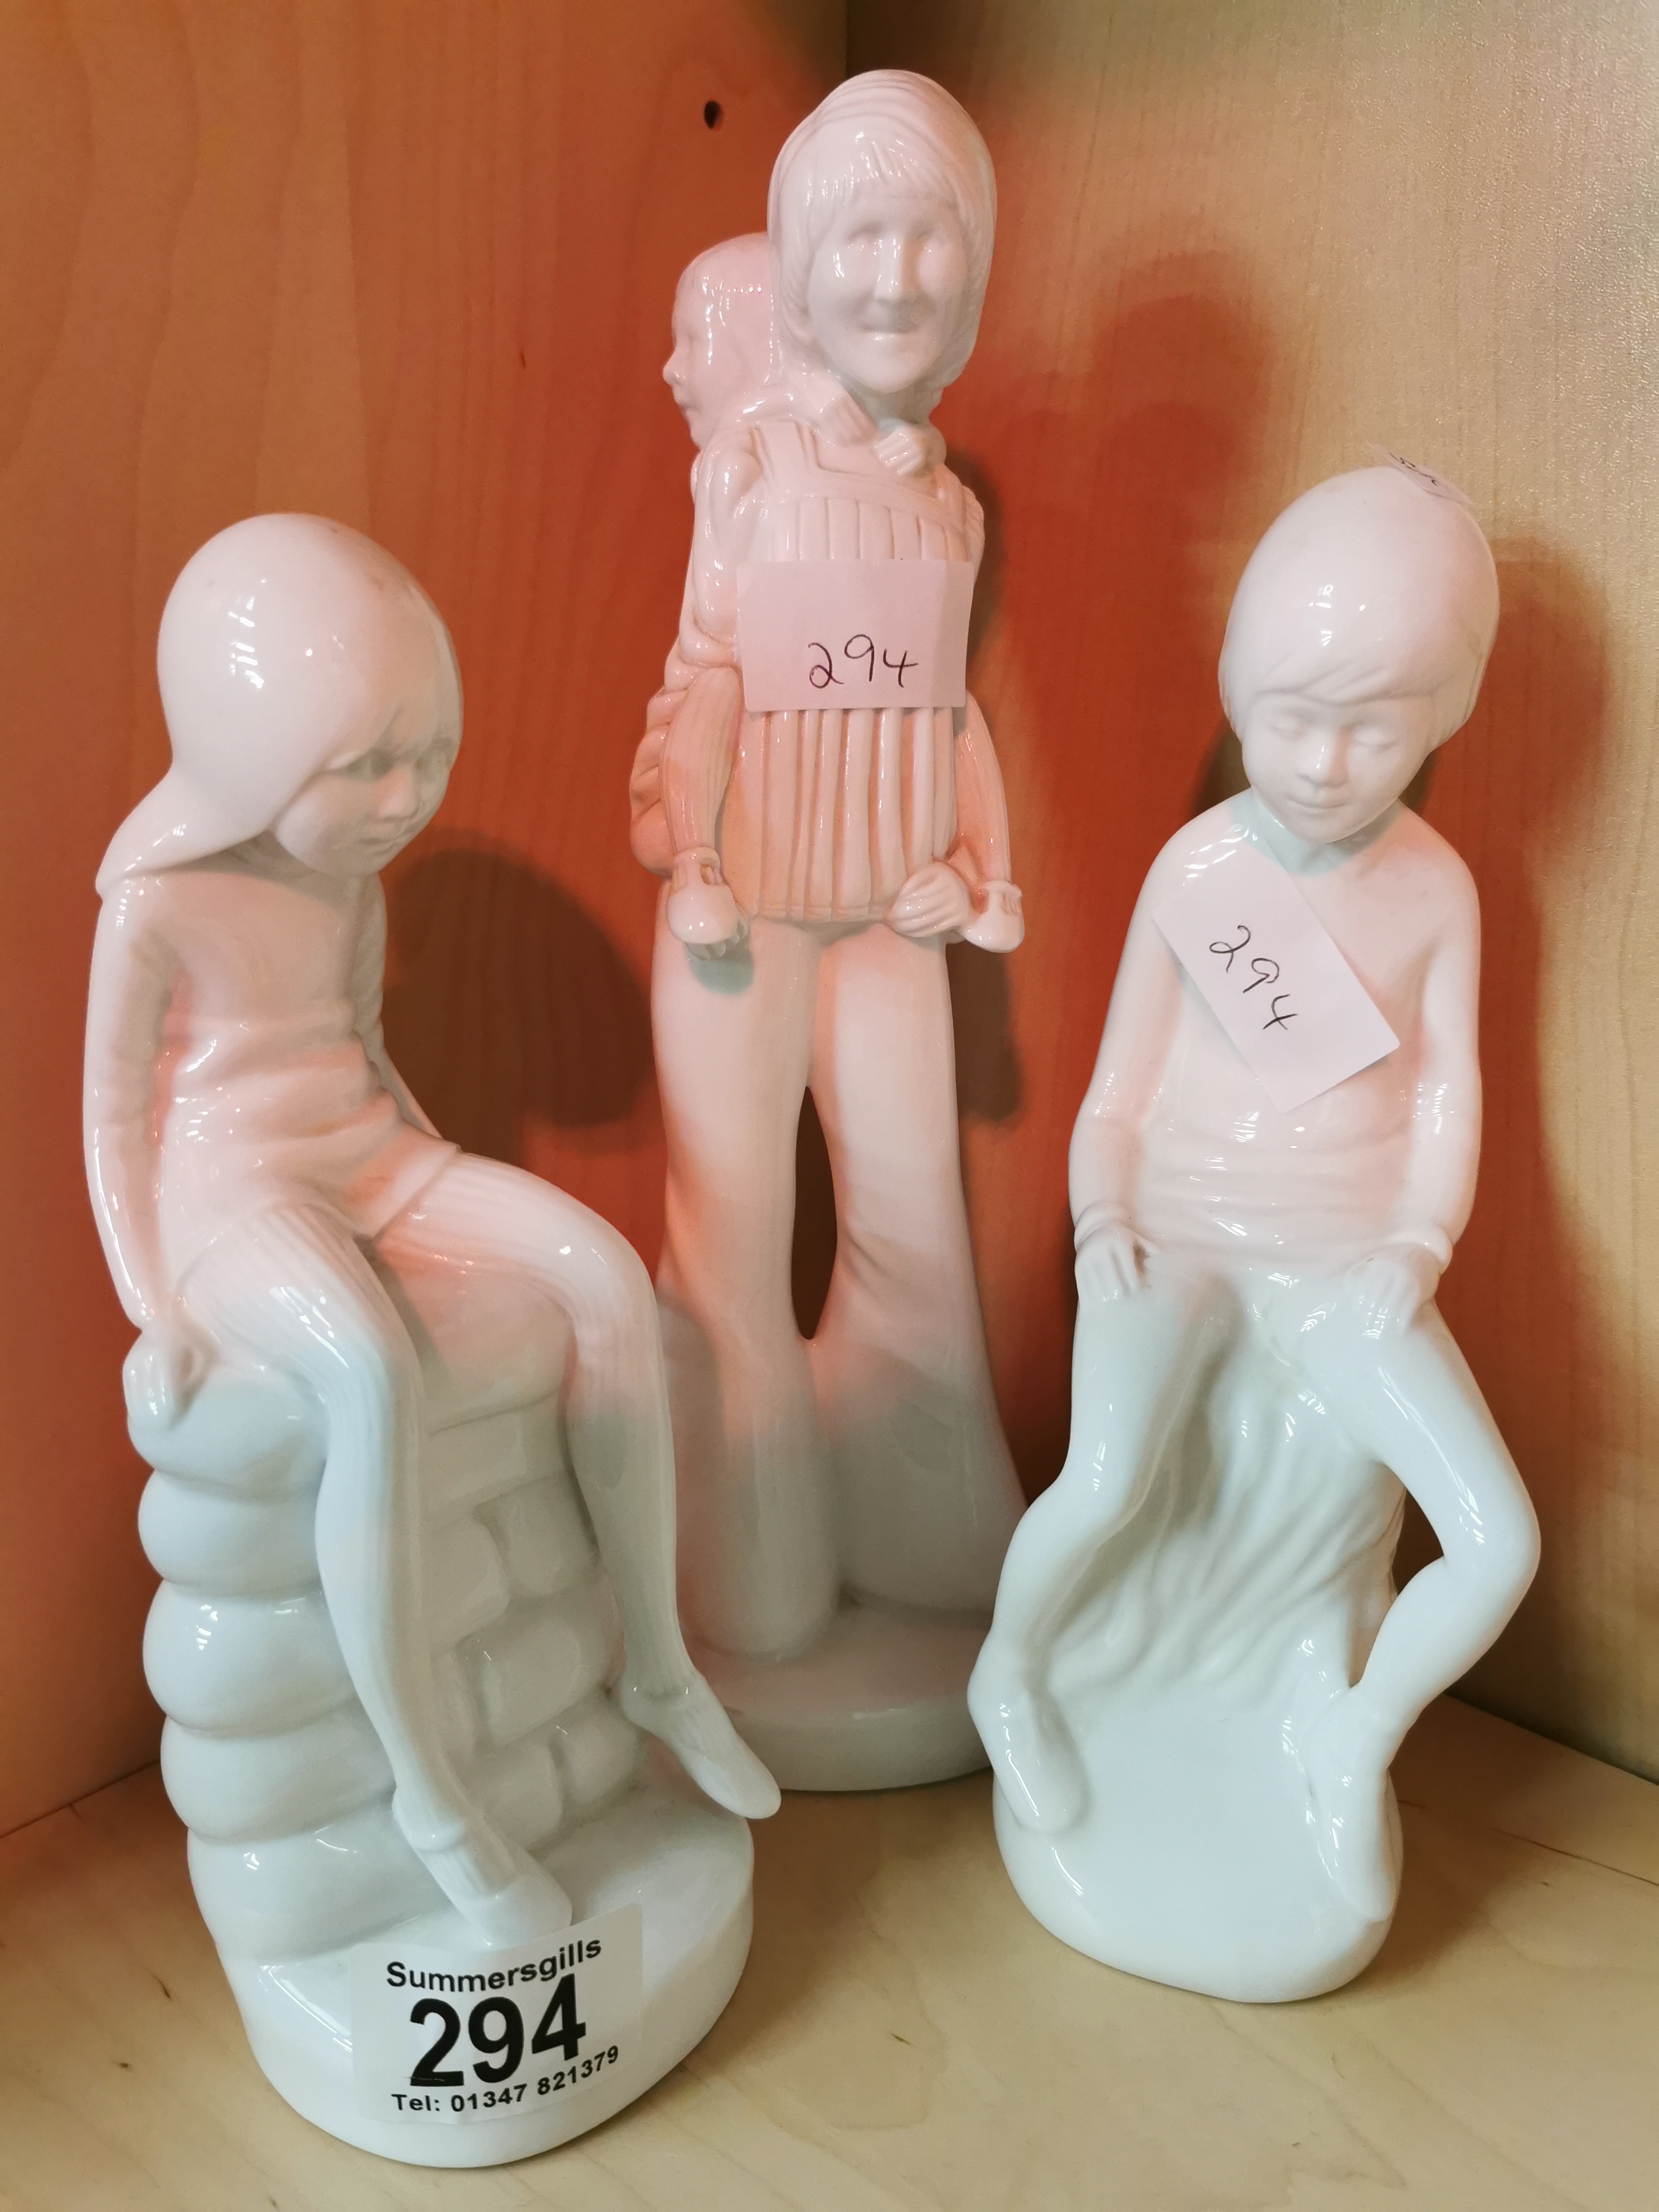 Spode figures - Jane, Simon and piggy bank